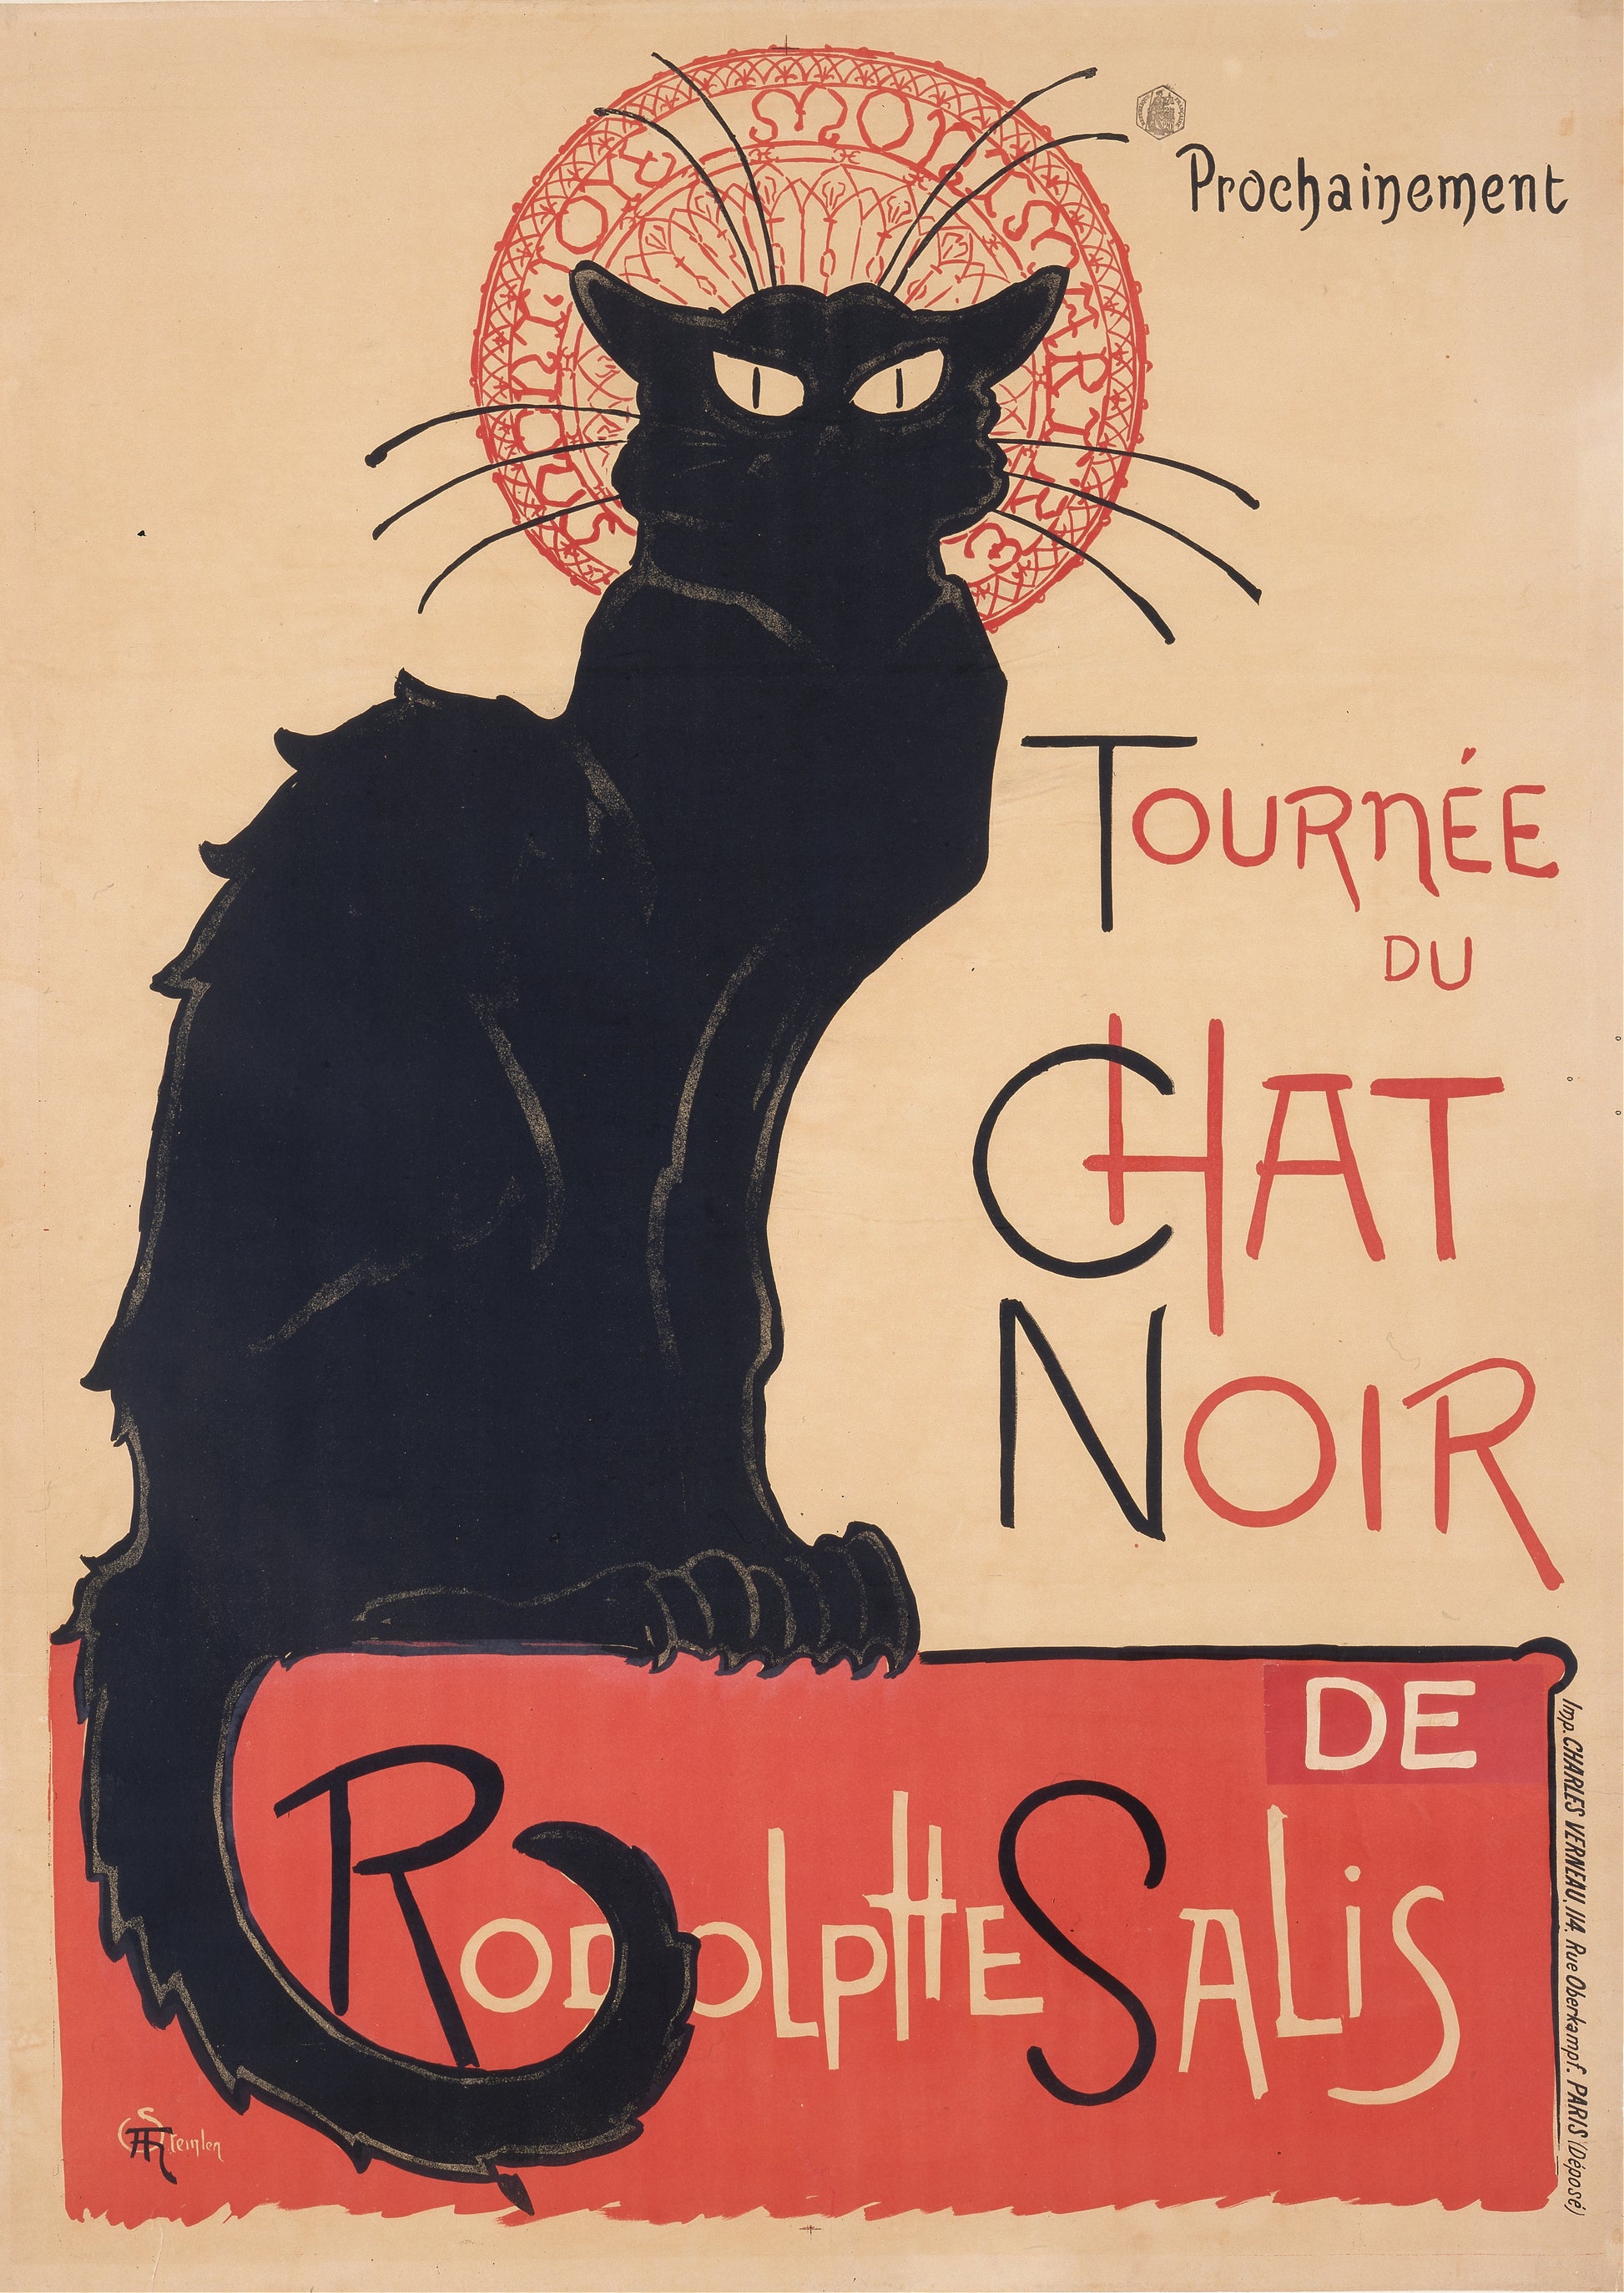 Tournee du chat noir poster artwork (Paris,1890s) | Theophile Steinlen Posters, Prints, & Visual Artwork The Trumpet Shop   